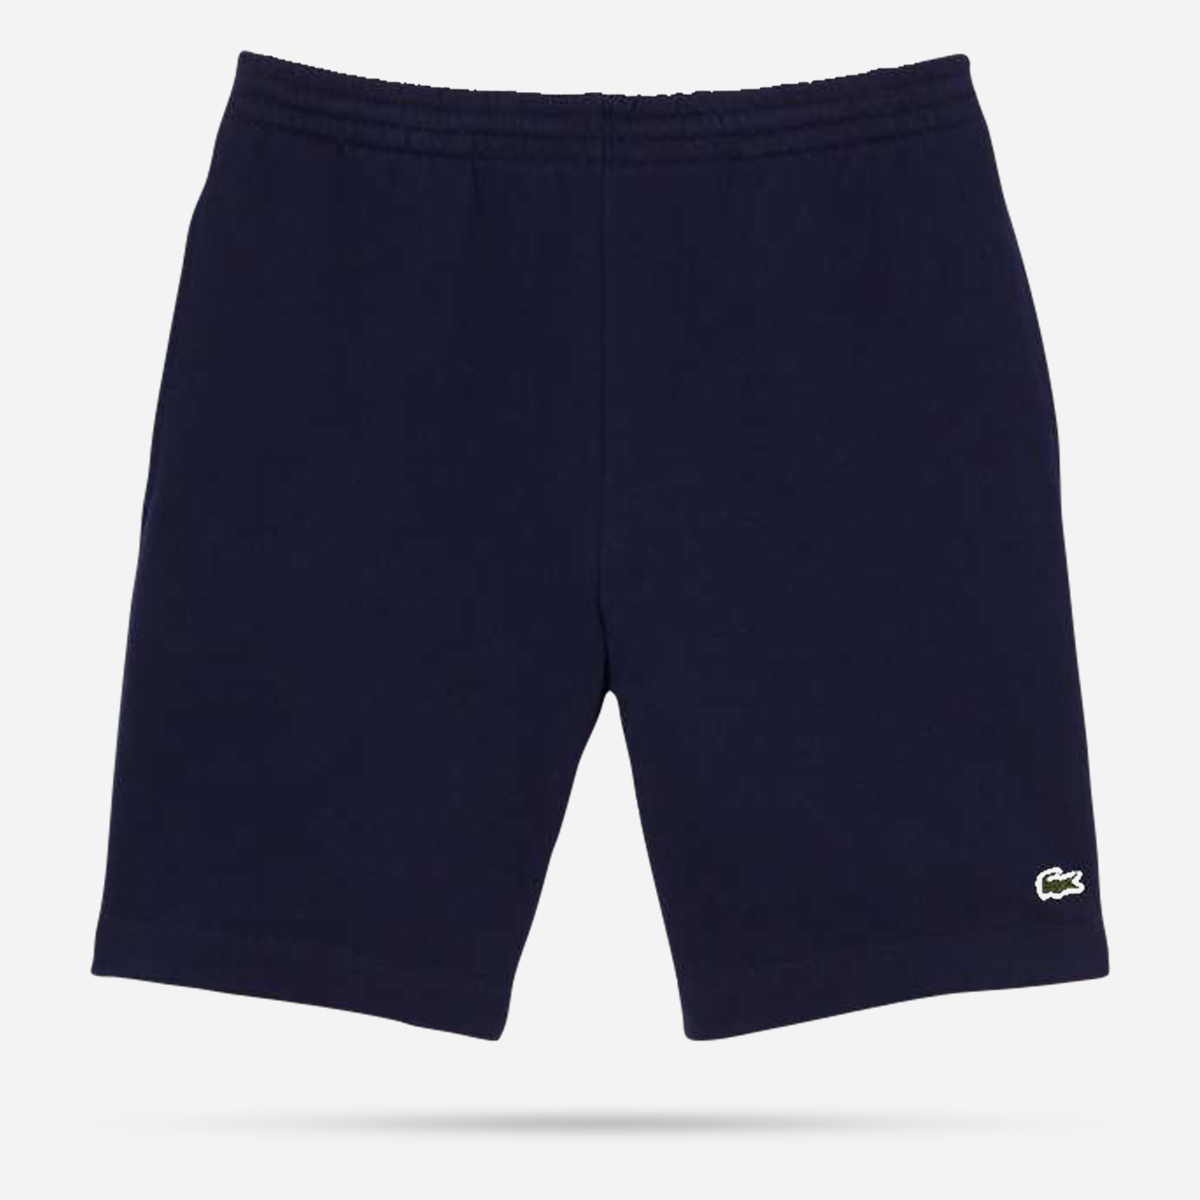 AN297431 1HG1 Men's shorts 01